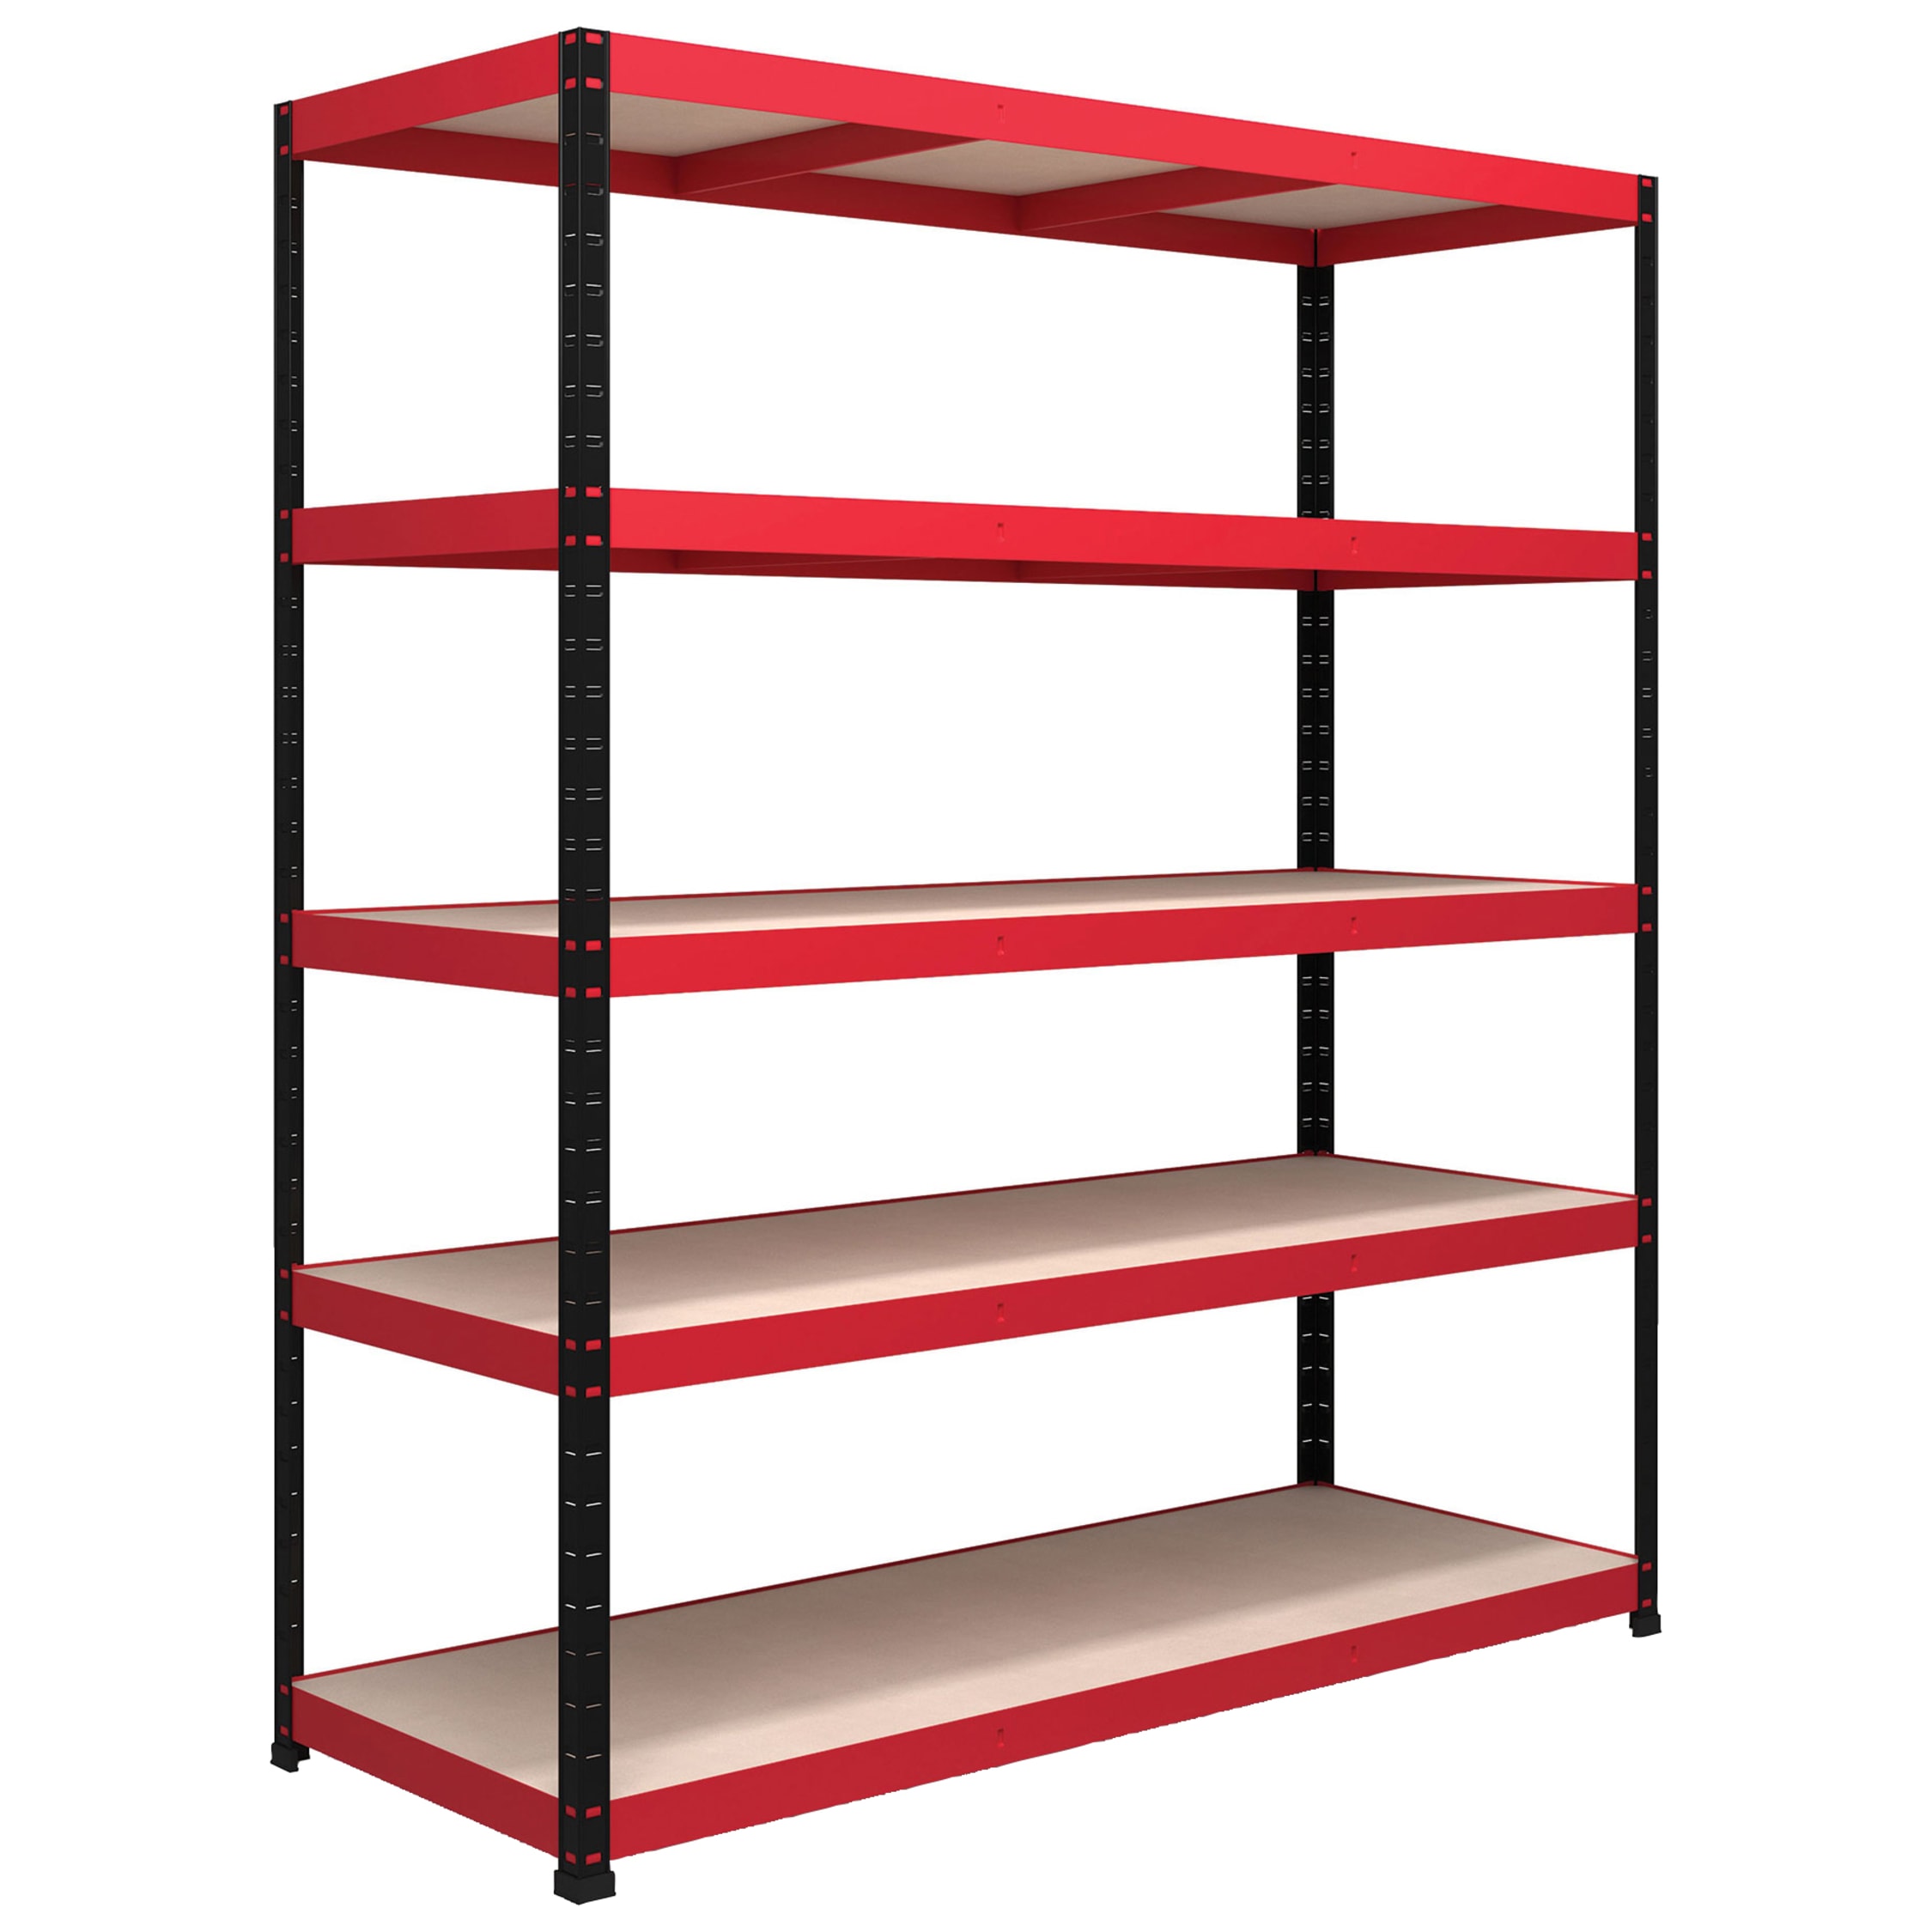 RB Boss Shelf Kit 5 MDF Boltless Shelves Red/Black NEW 13501 1800 x 1600 x 600 